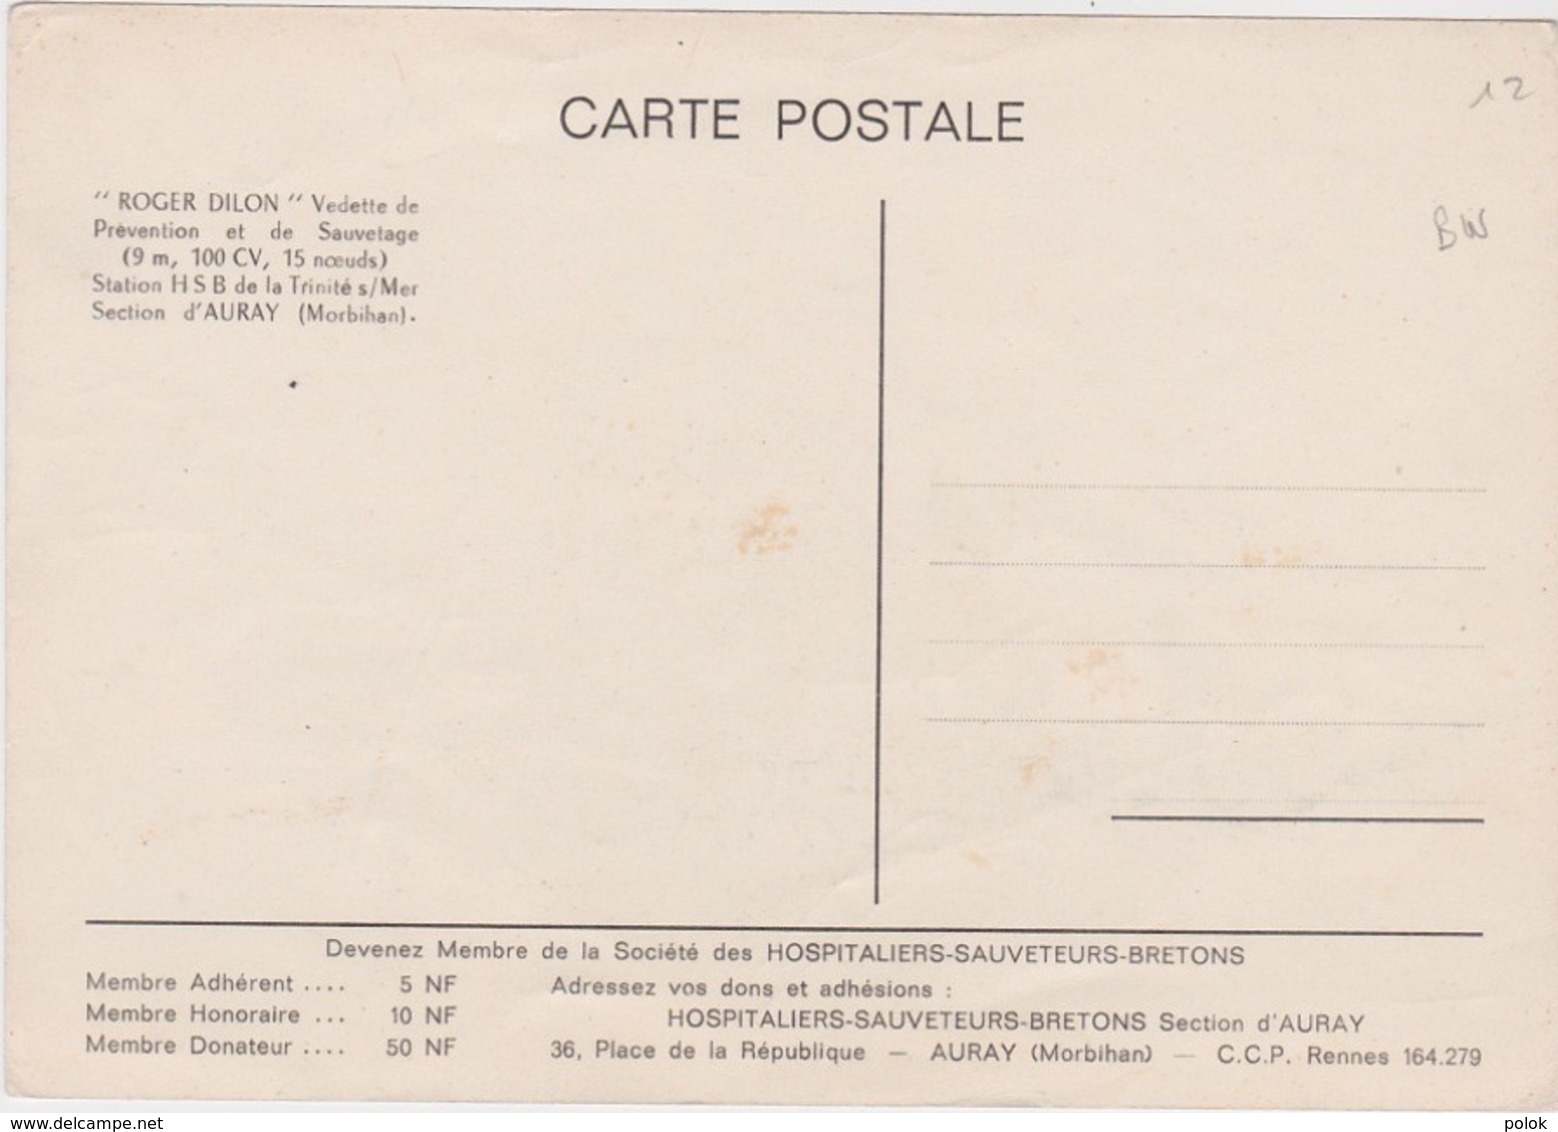 Bw- Rare Carte Station HSB De La Trinité Sur Mer (Section D'Auray)- "Roger DILLON" Vedette De Prévention Et De Sauvetage - La Trinite Sur Mer